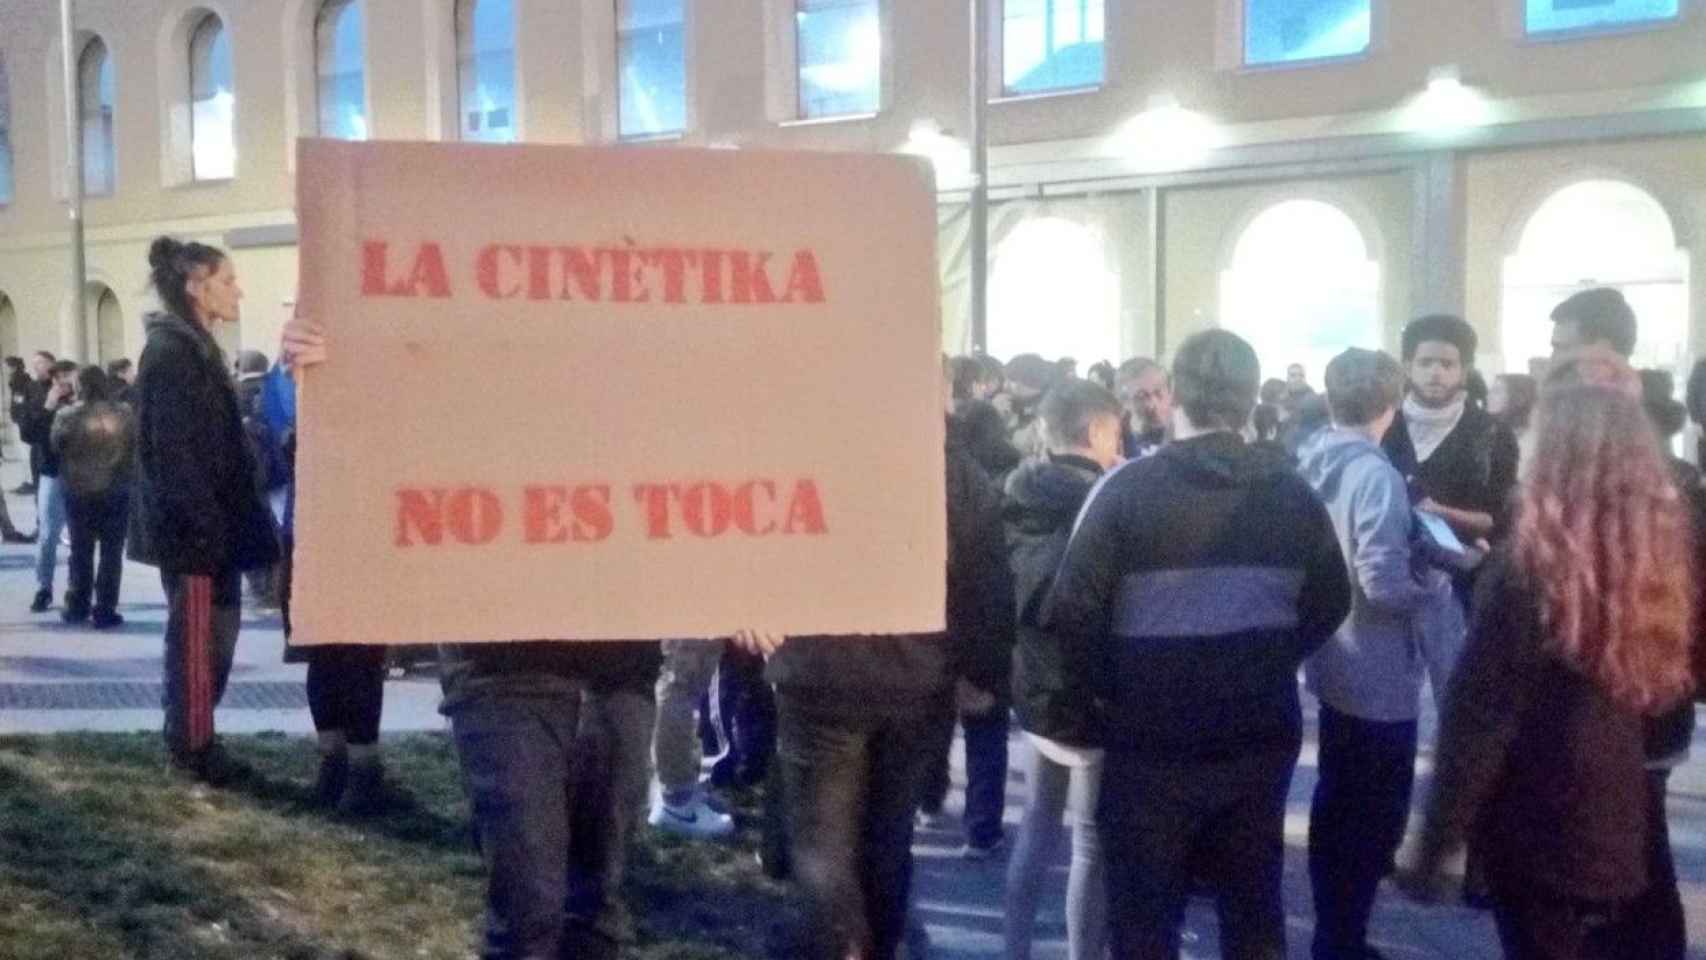 Movilización contra el desalojo de La Cinètika / LA CINÈTIKA